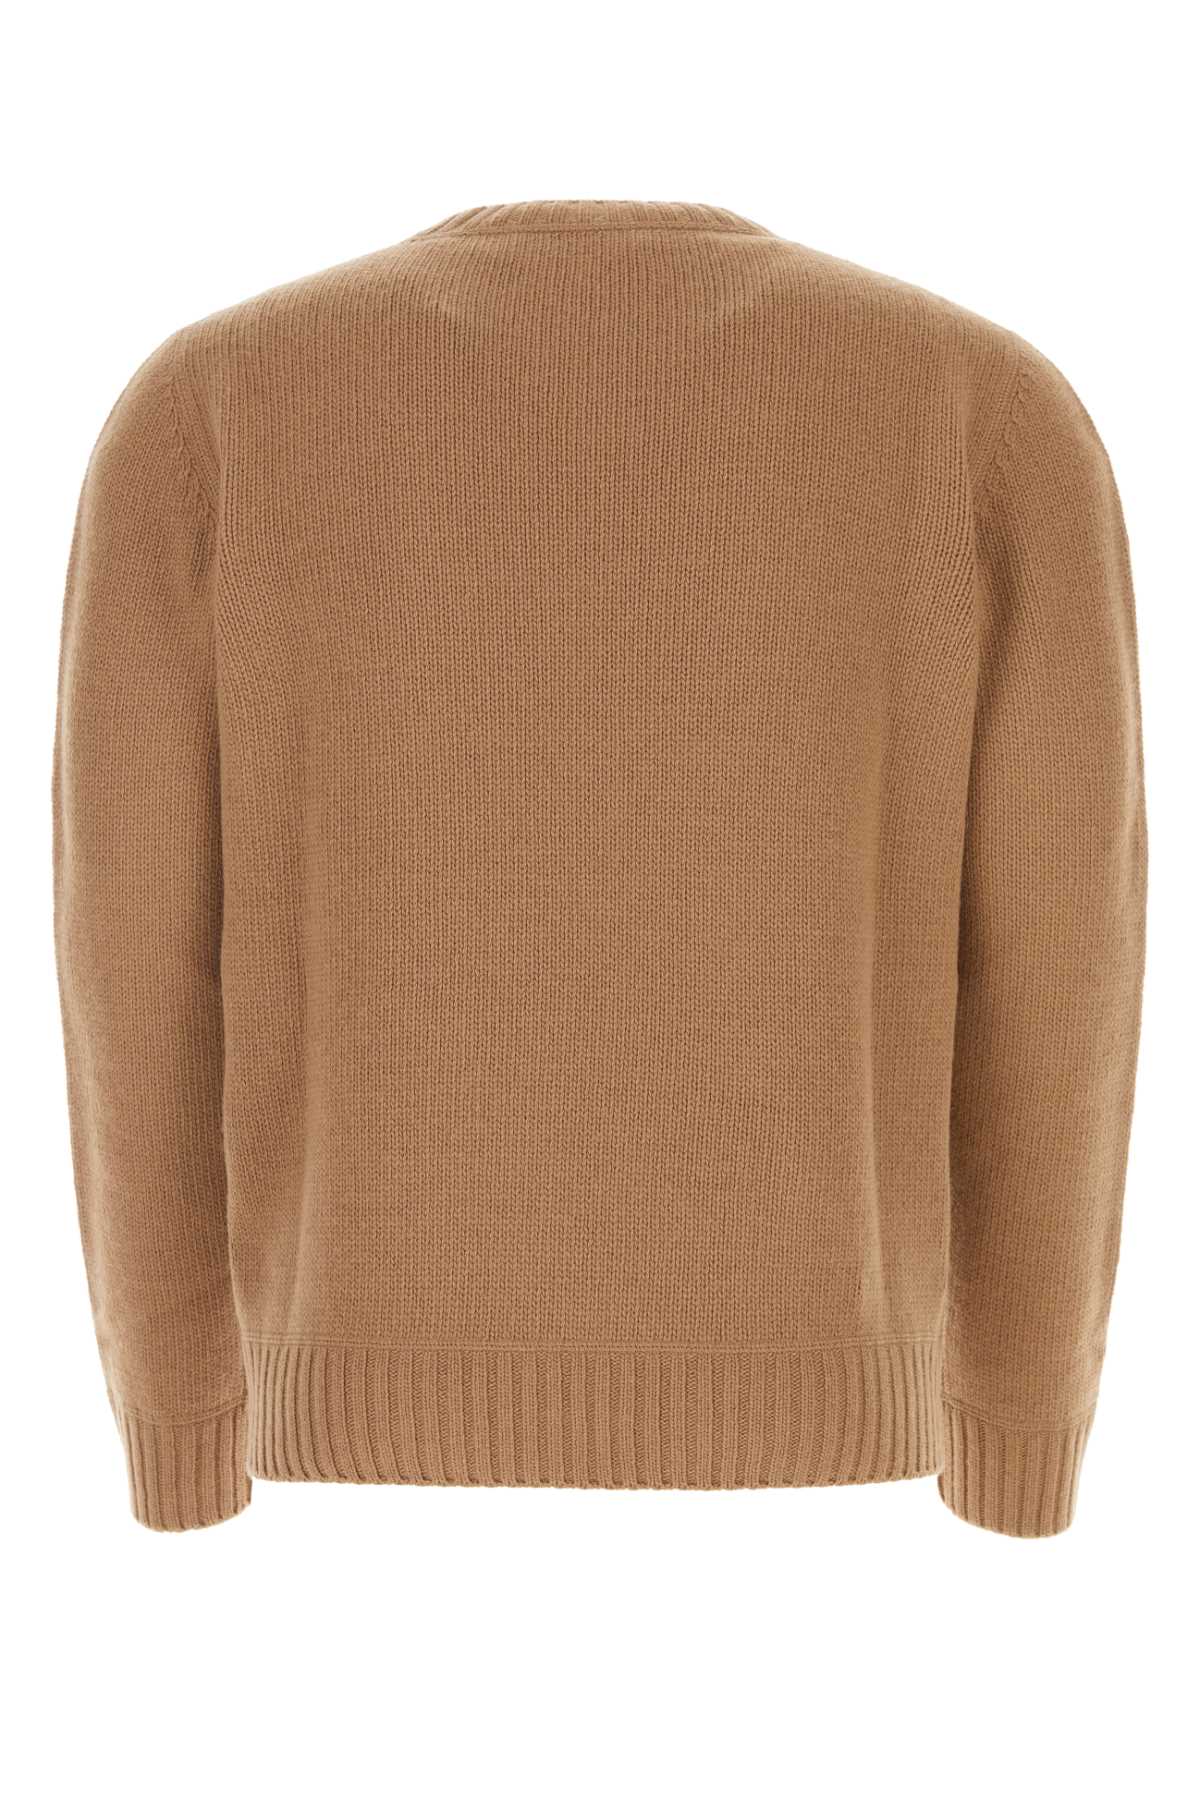 Prada Biscuit Wool Blend Sweater In F0040